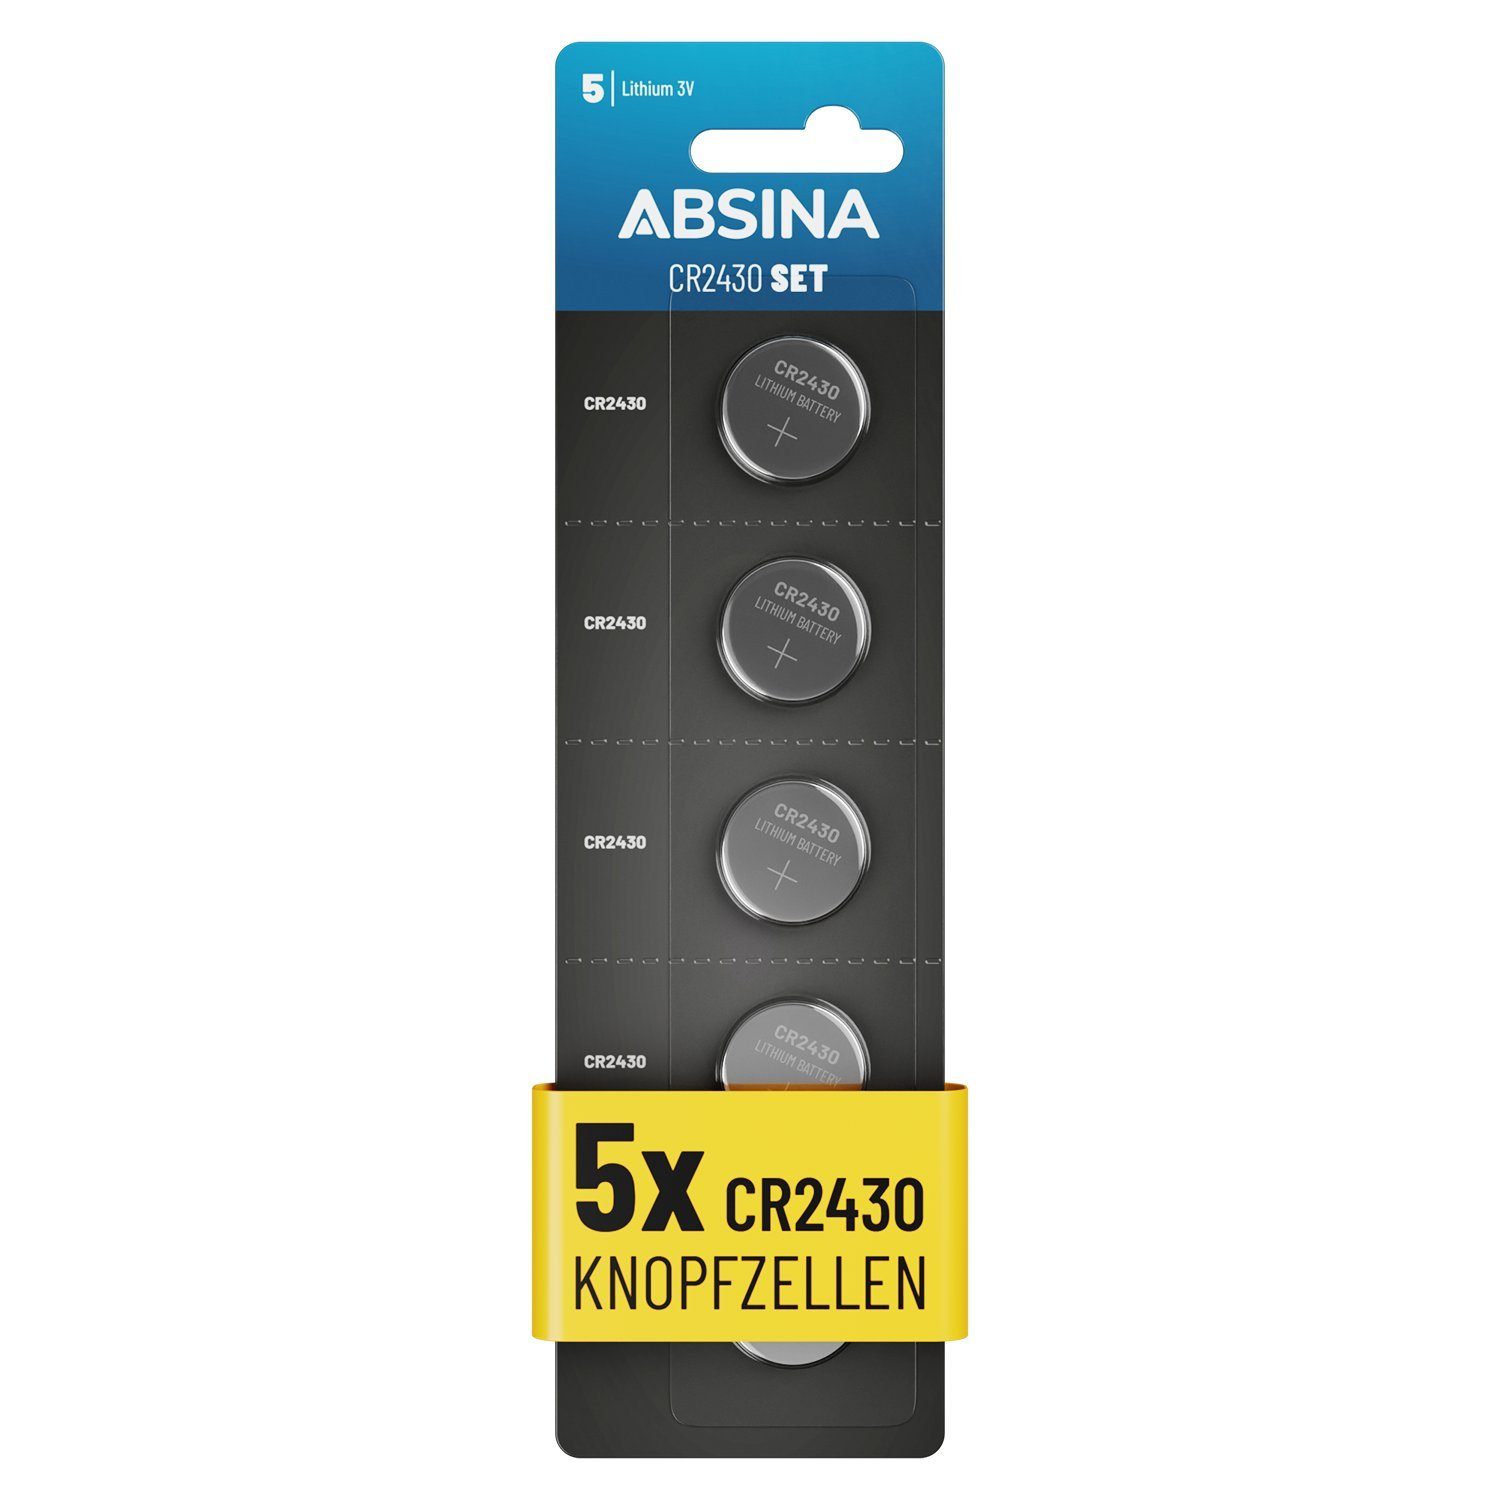 Knopfbatterie Knopfzelle Knopfzellen, - CR Pack (1 5er Knopfzelle, CR2430 ABSINA 2430 St) 3V